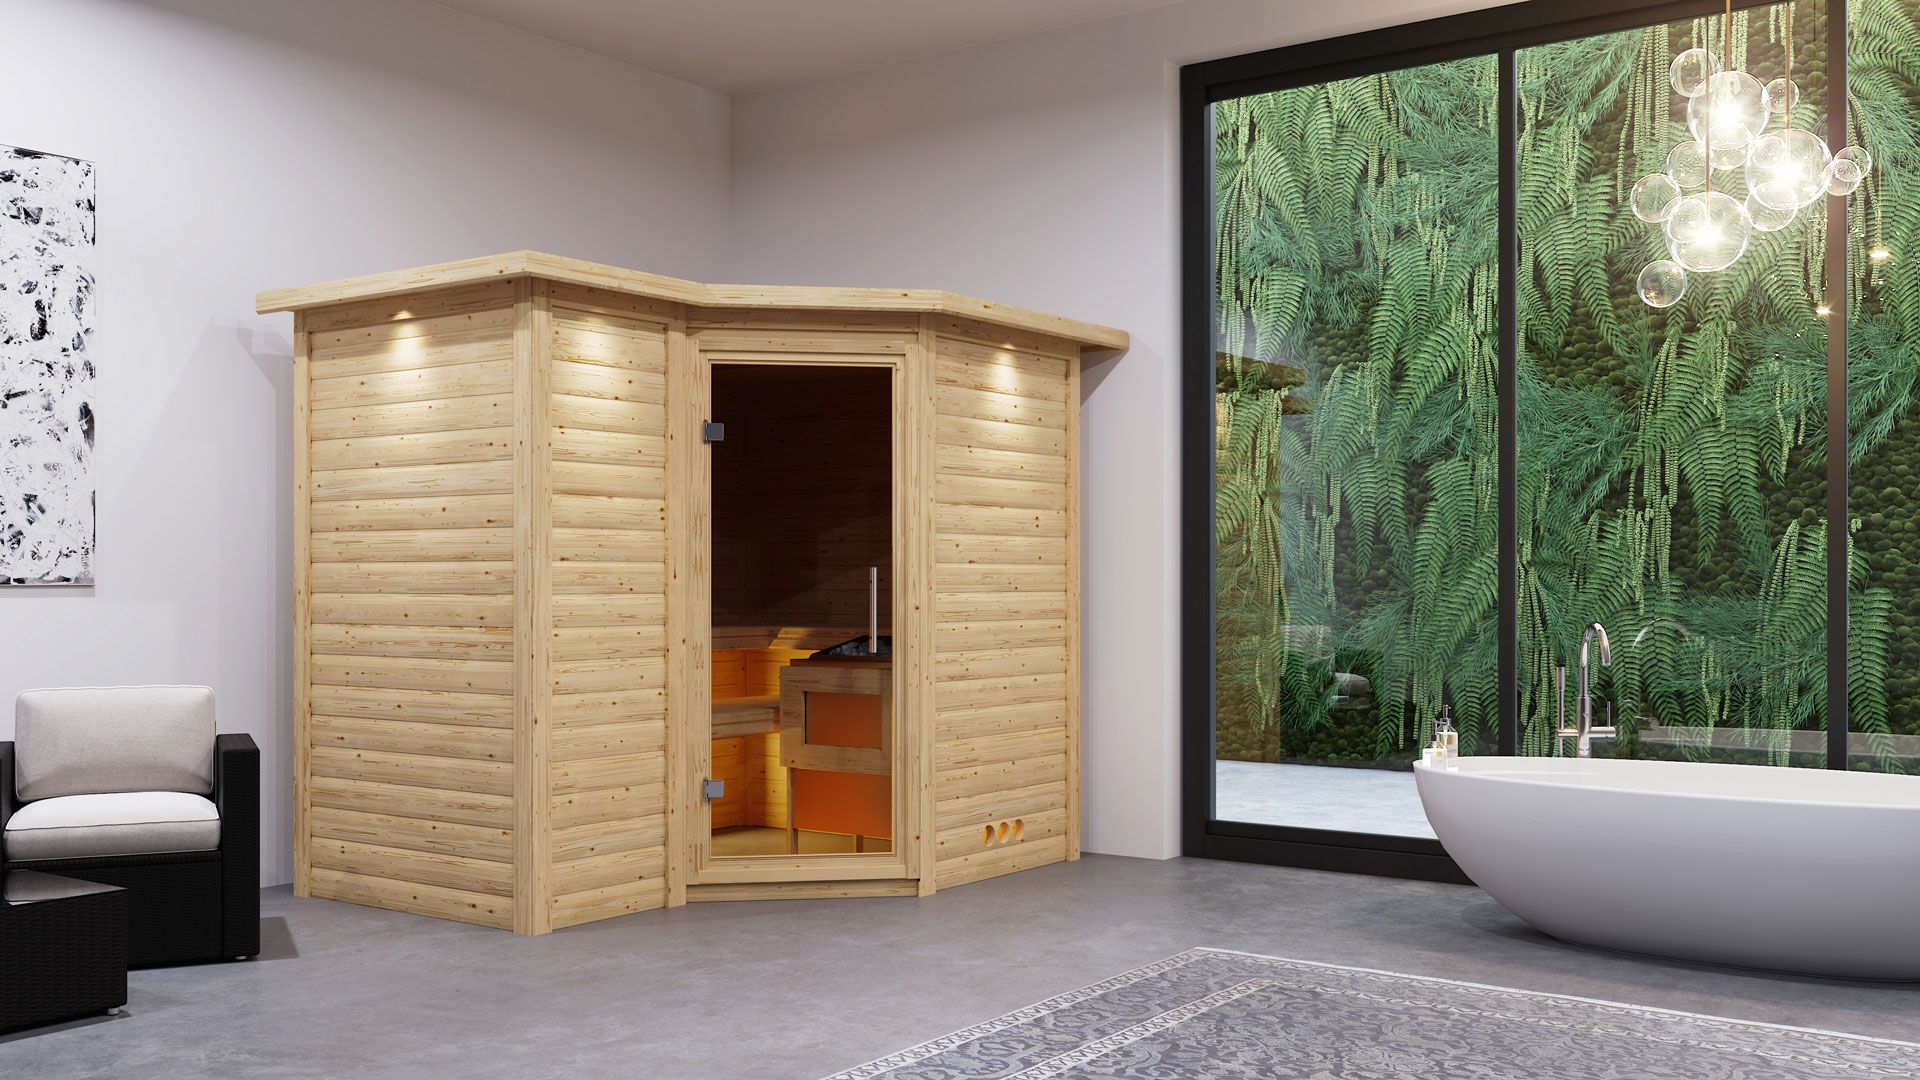 Sauna "Tjara 2" SET mit graphitfarbener Tür und Kranz - Farbe: Natur, Ofen externe Steuerung easy 9 kW - 264 x 198 x 212 cm (B x T x H)